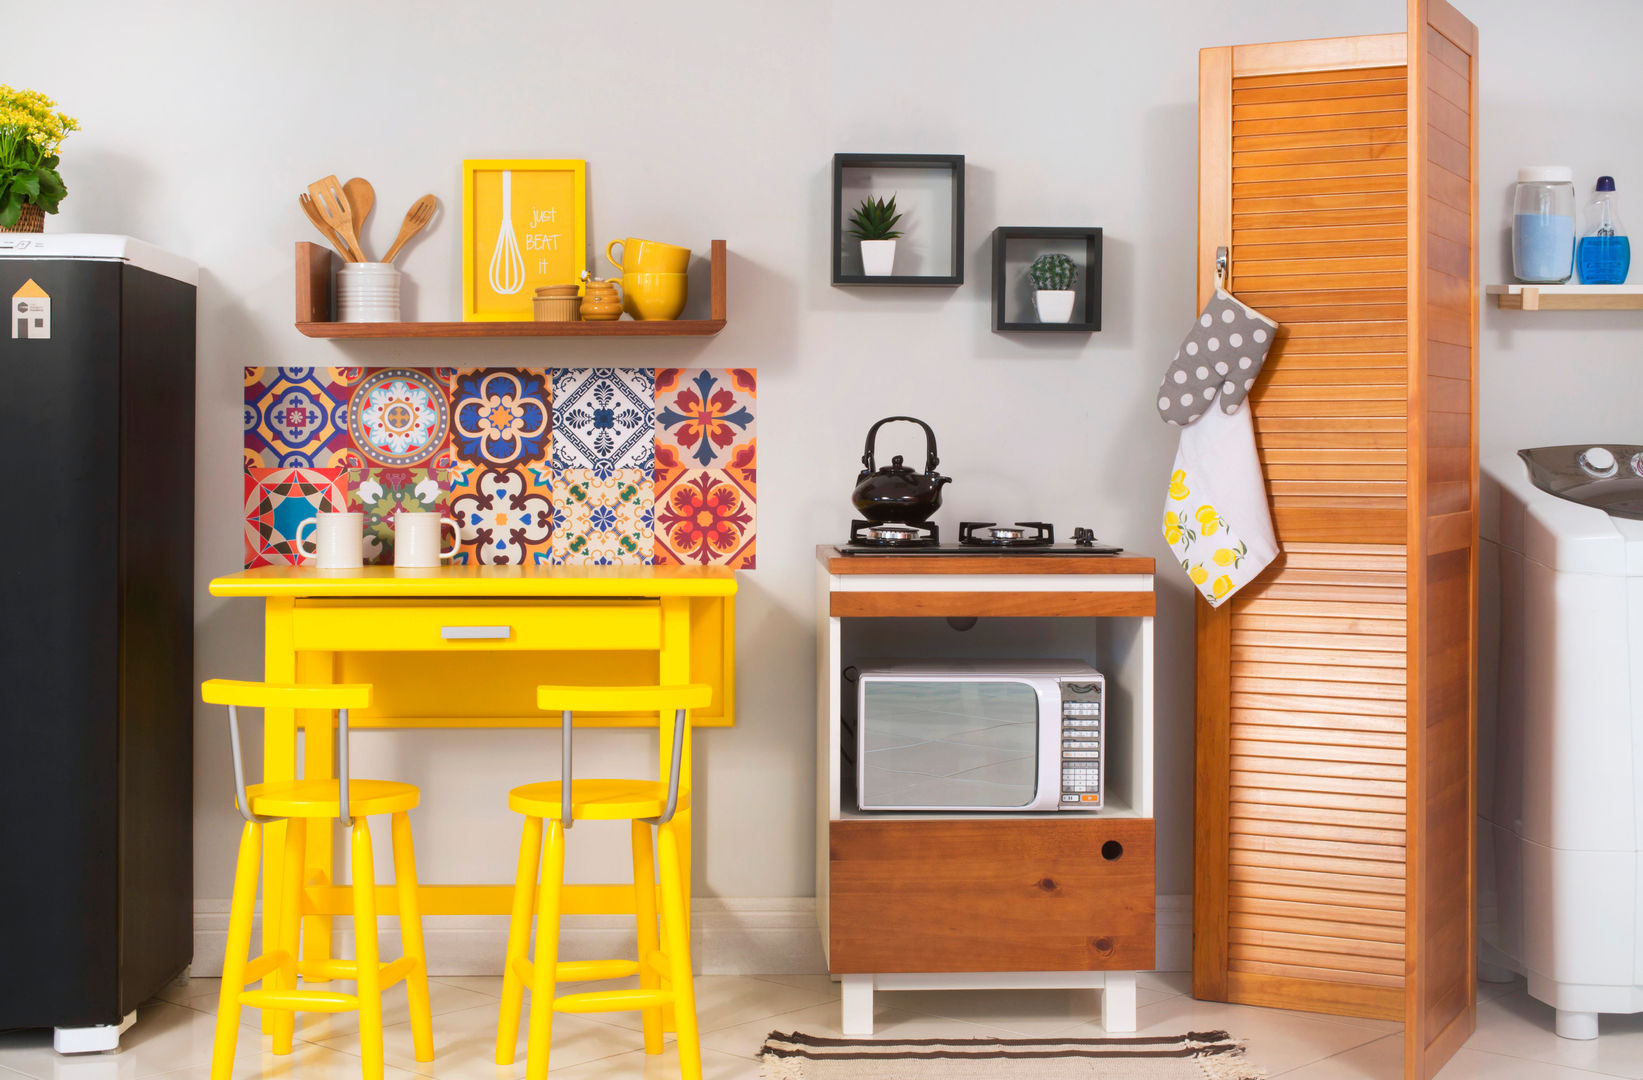 Modulados, Meu Móvel de Madeira Meu Móvel de Madeira Kitchen Solid Wood Multicolored Cabinets & shelves